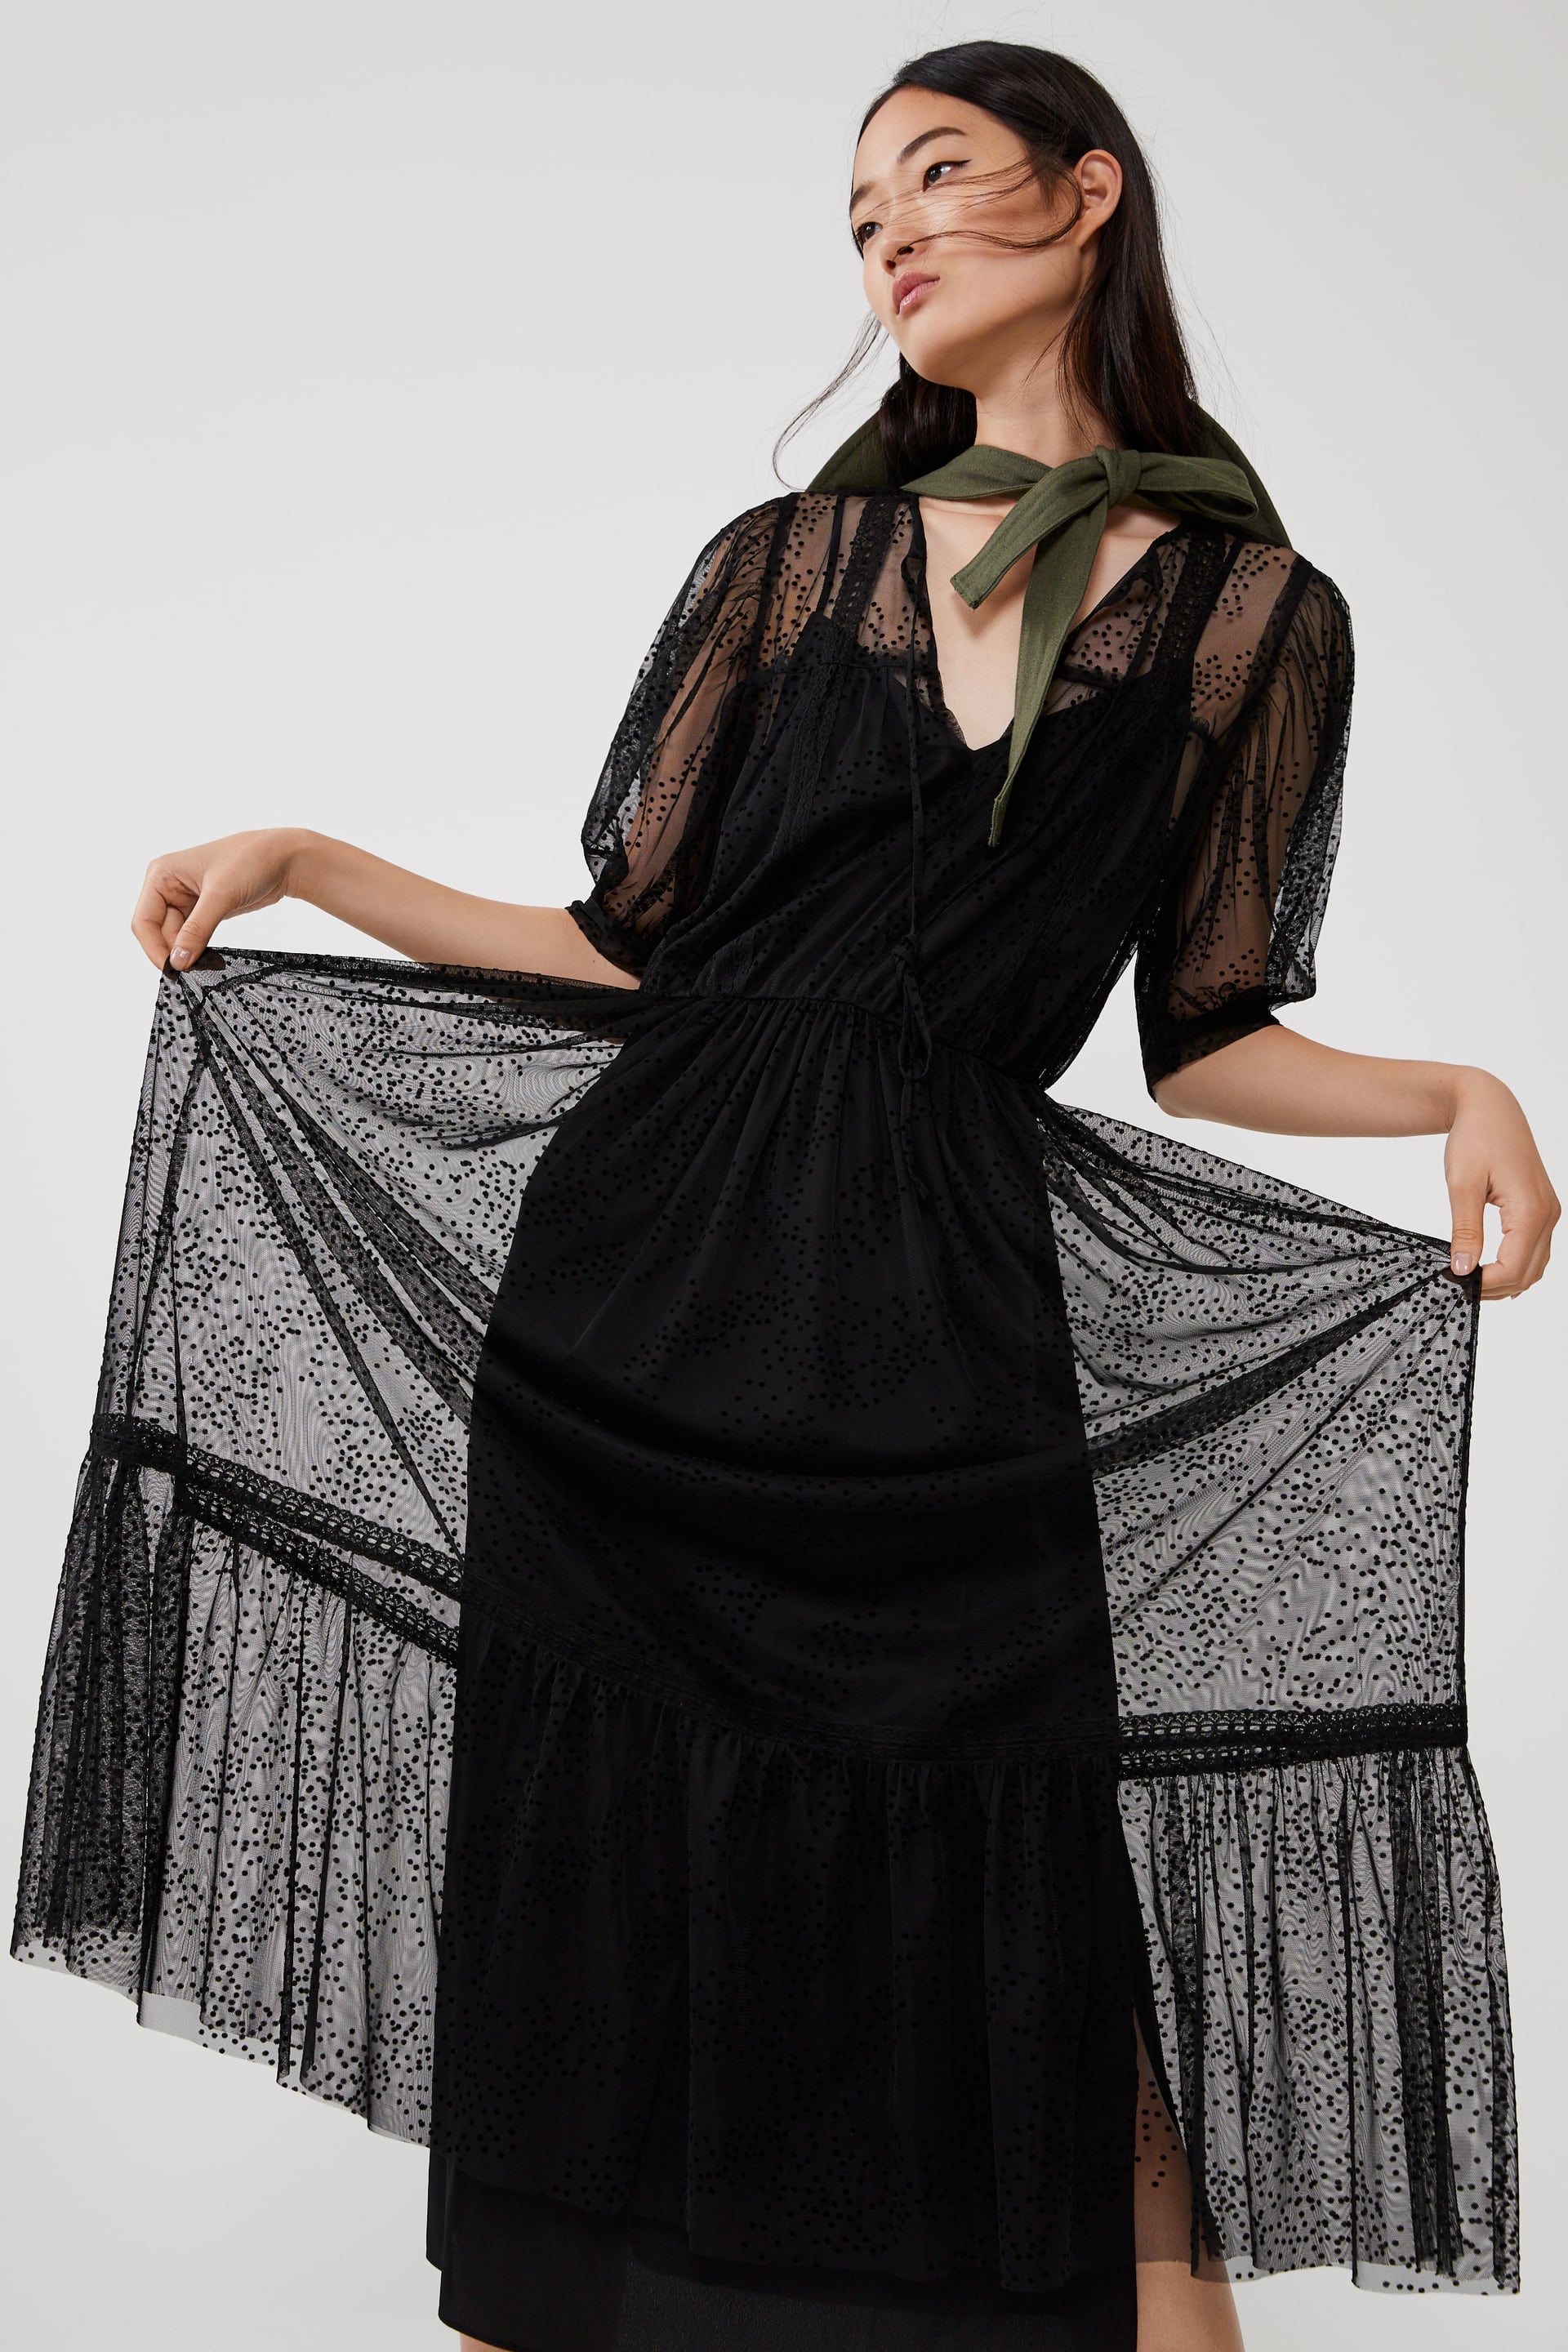 Zara Swiss Dot Dress | Zendaya's Polka 